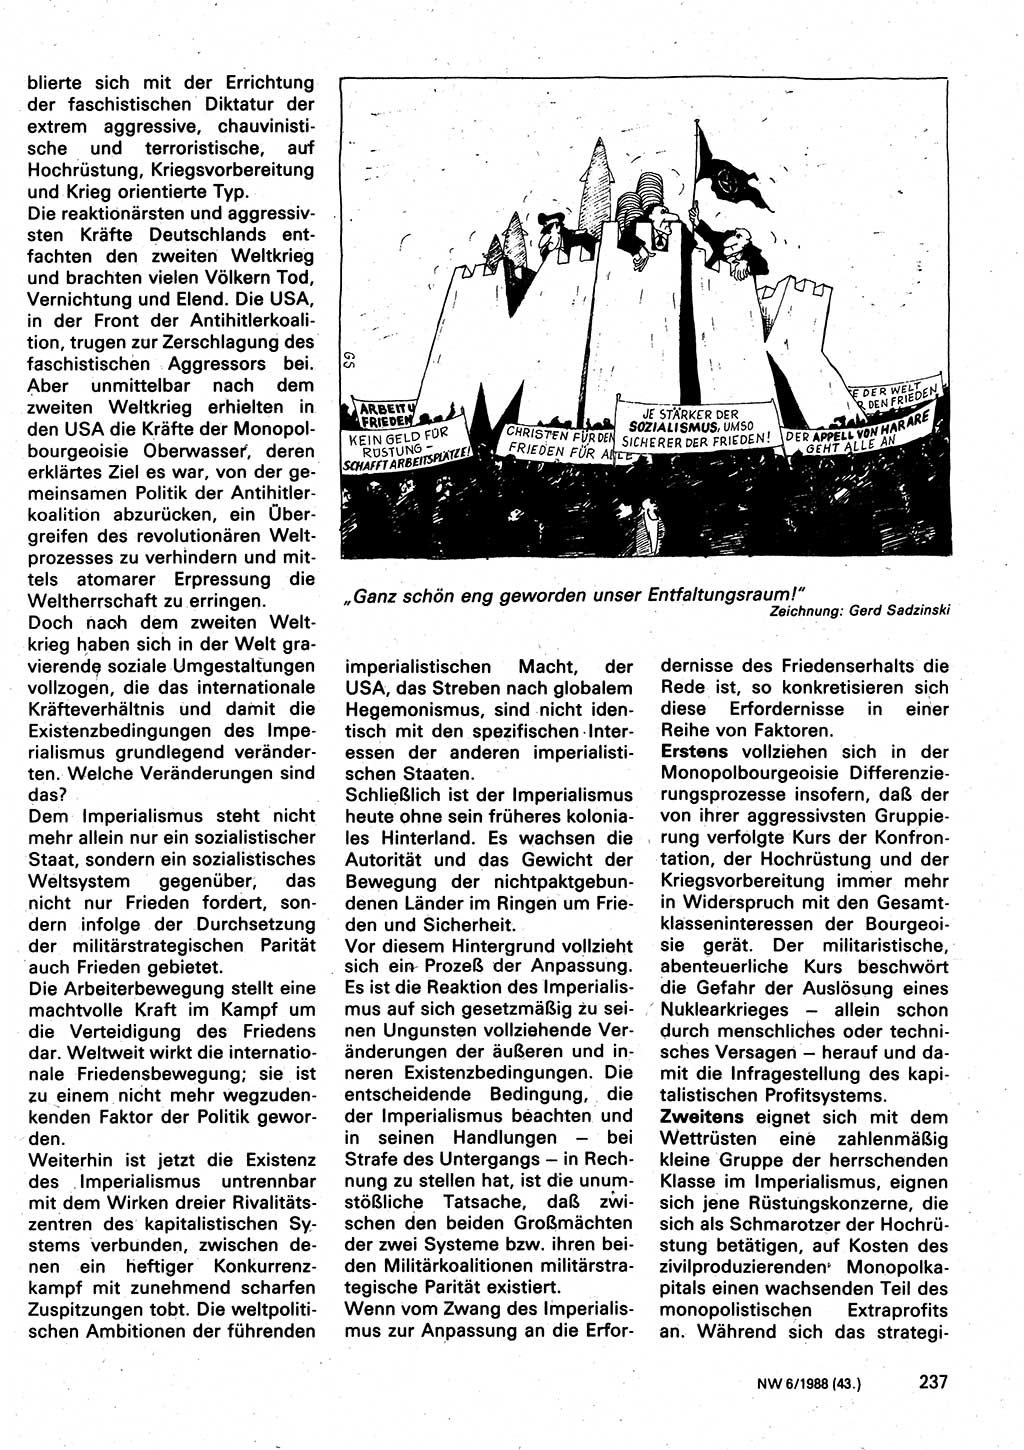 Neuer Weg (NW), Organ des Zentralkomitees (ZK) der SED (Sozialistische Einheitspartei Deutschlands) für Fragen des Parteilebens, 43. Jahrgang [Deutsche Demokratische Republik (DDR)] 1988, Seite 237 (NW ZK SED DDR 1988, S. 237)